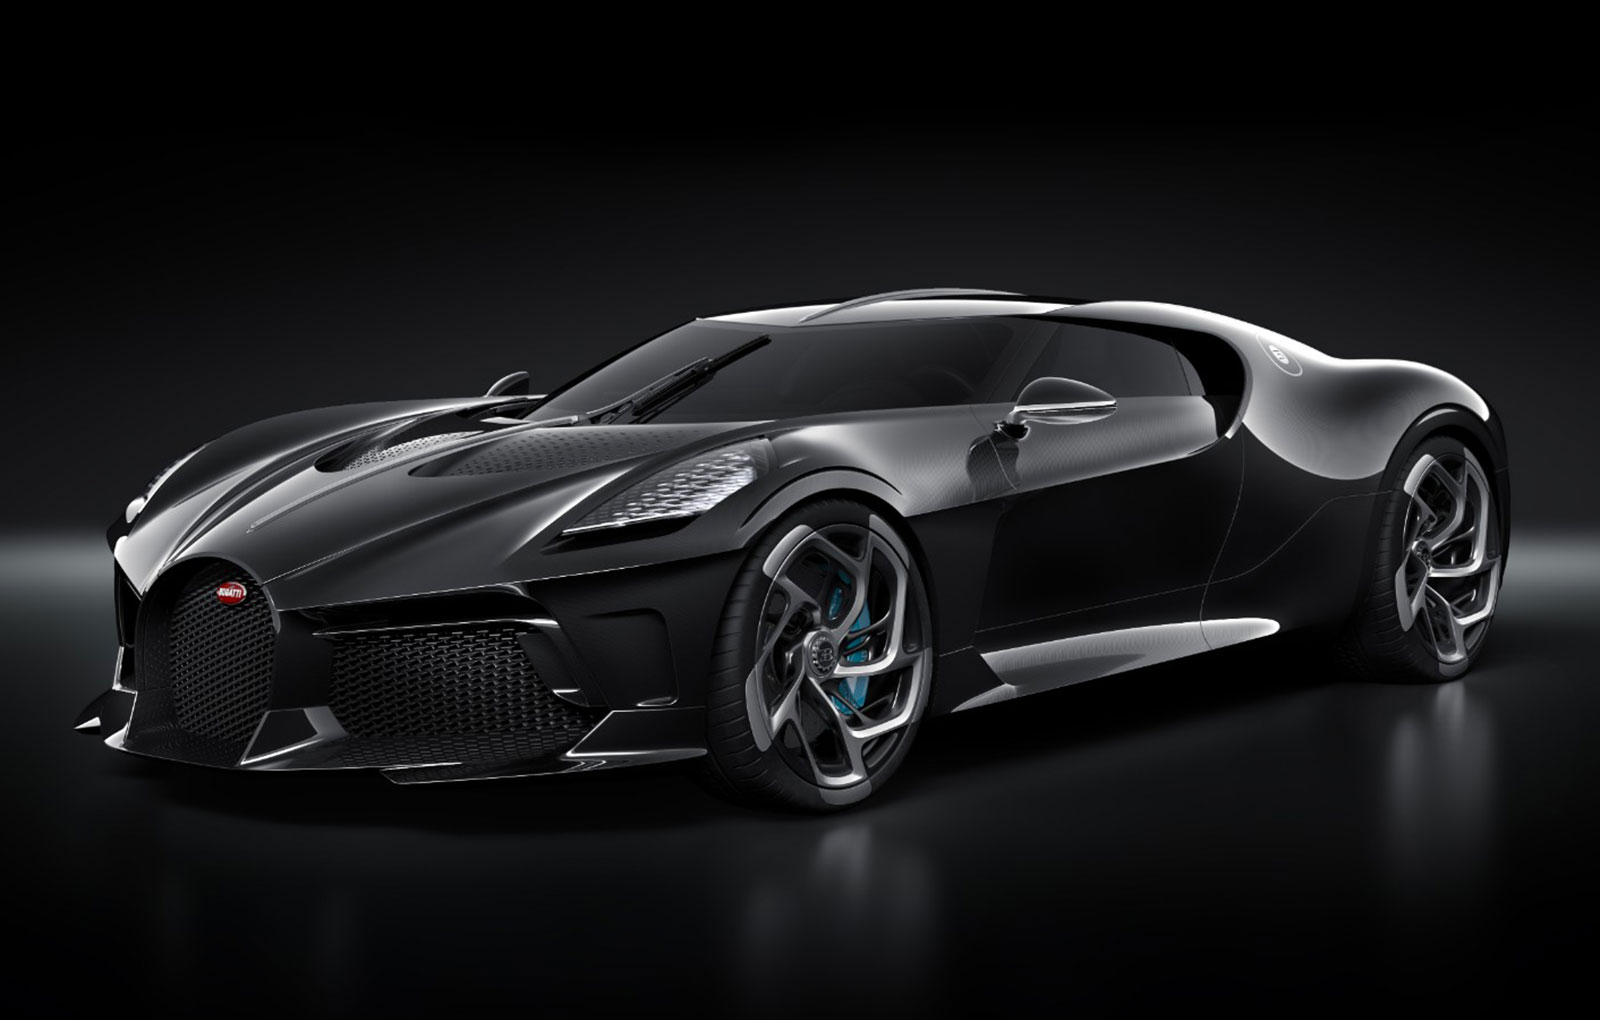 Un model unicat Bugatti La Voiture Noire a fost cumparat cu peste 16 milioane de euro, devenind cea mai scumpa masina vanduta in istorie